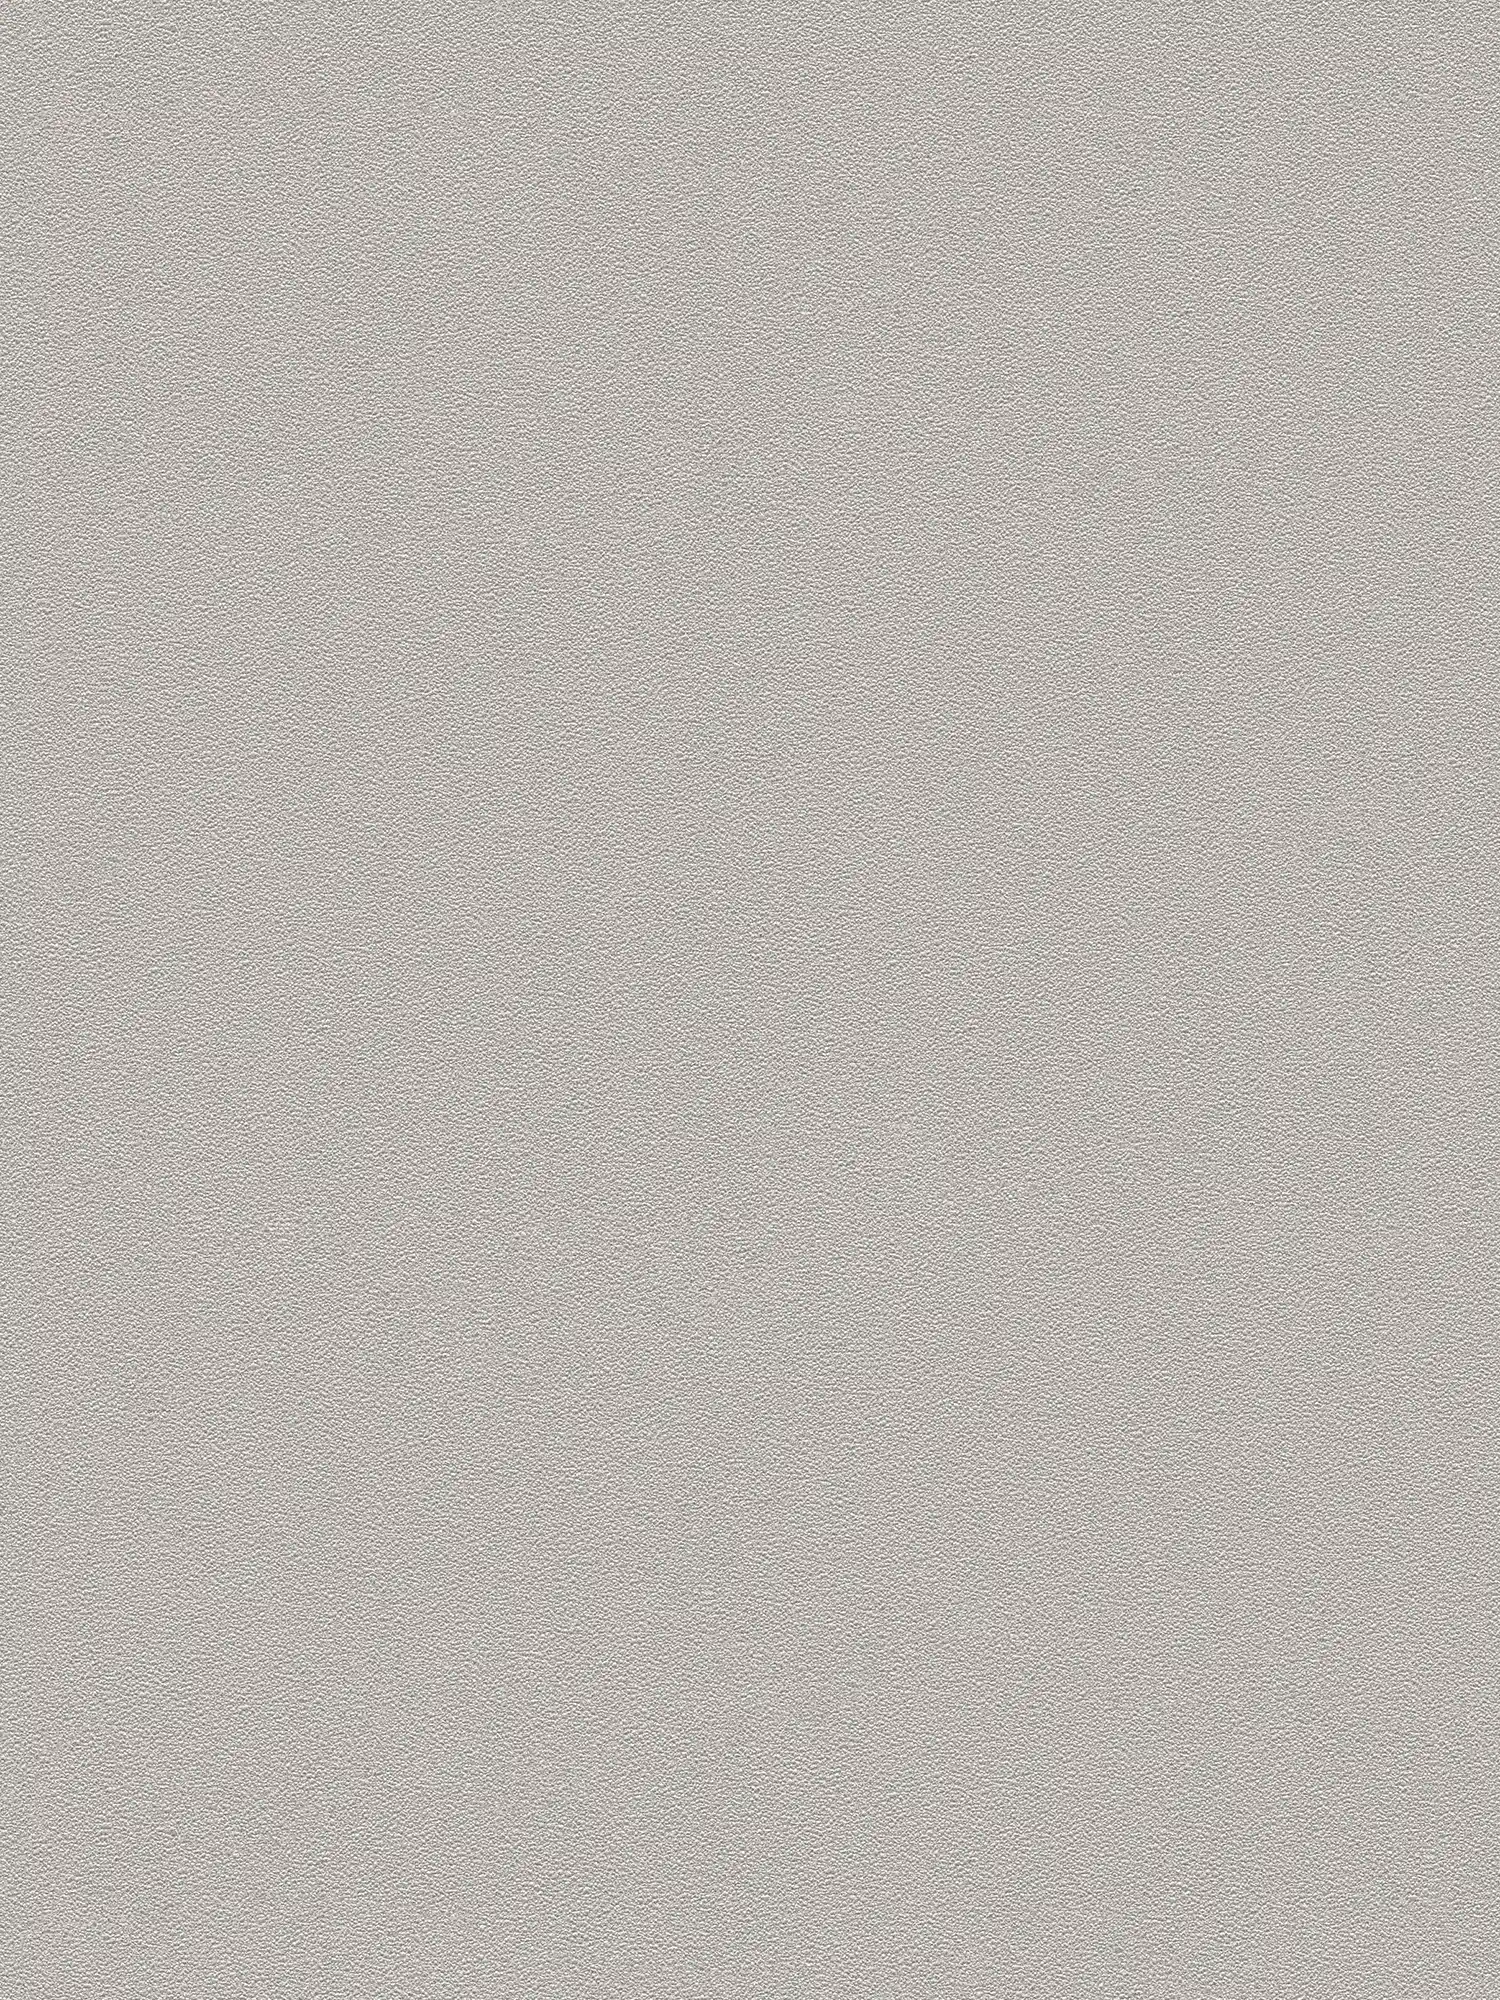 Eenheidsbehang natuurlijke kleur en textuurpatroon - Grijs, Bruin
